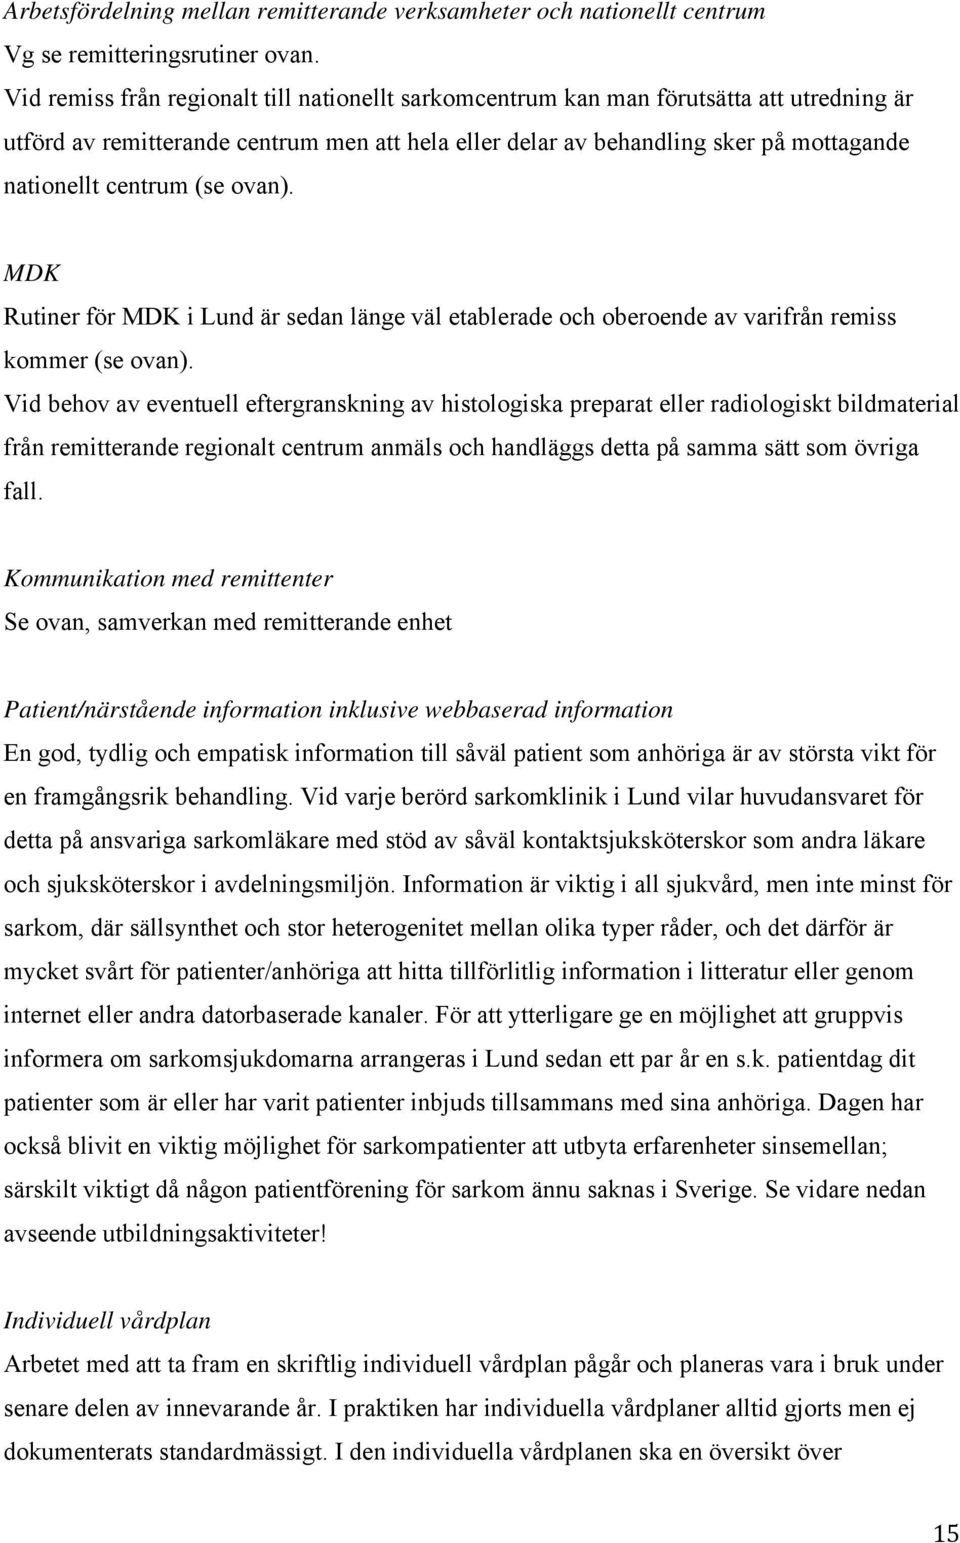 (se ovan). MDK Rutiner för MDK i Lund är sedan länge väl etablerade och oberoende av varifrån remiss kommer (se ovan).